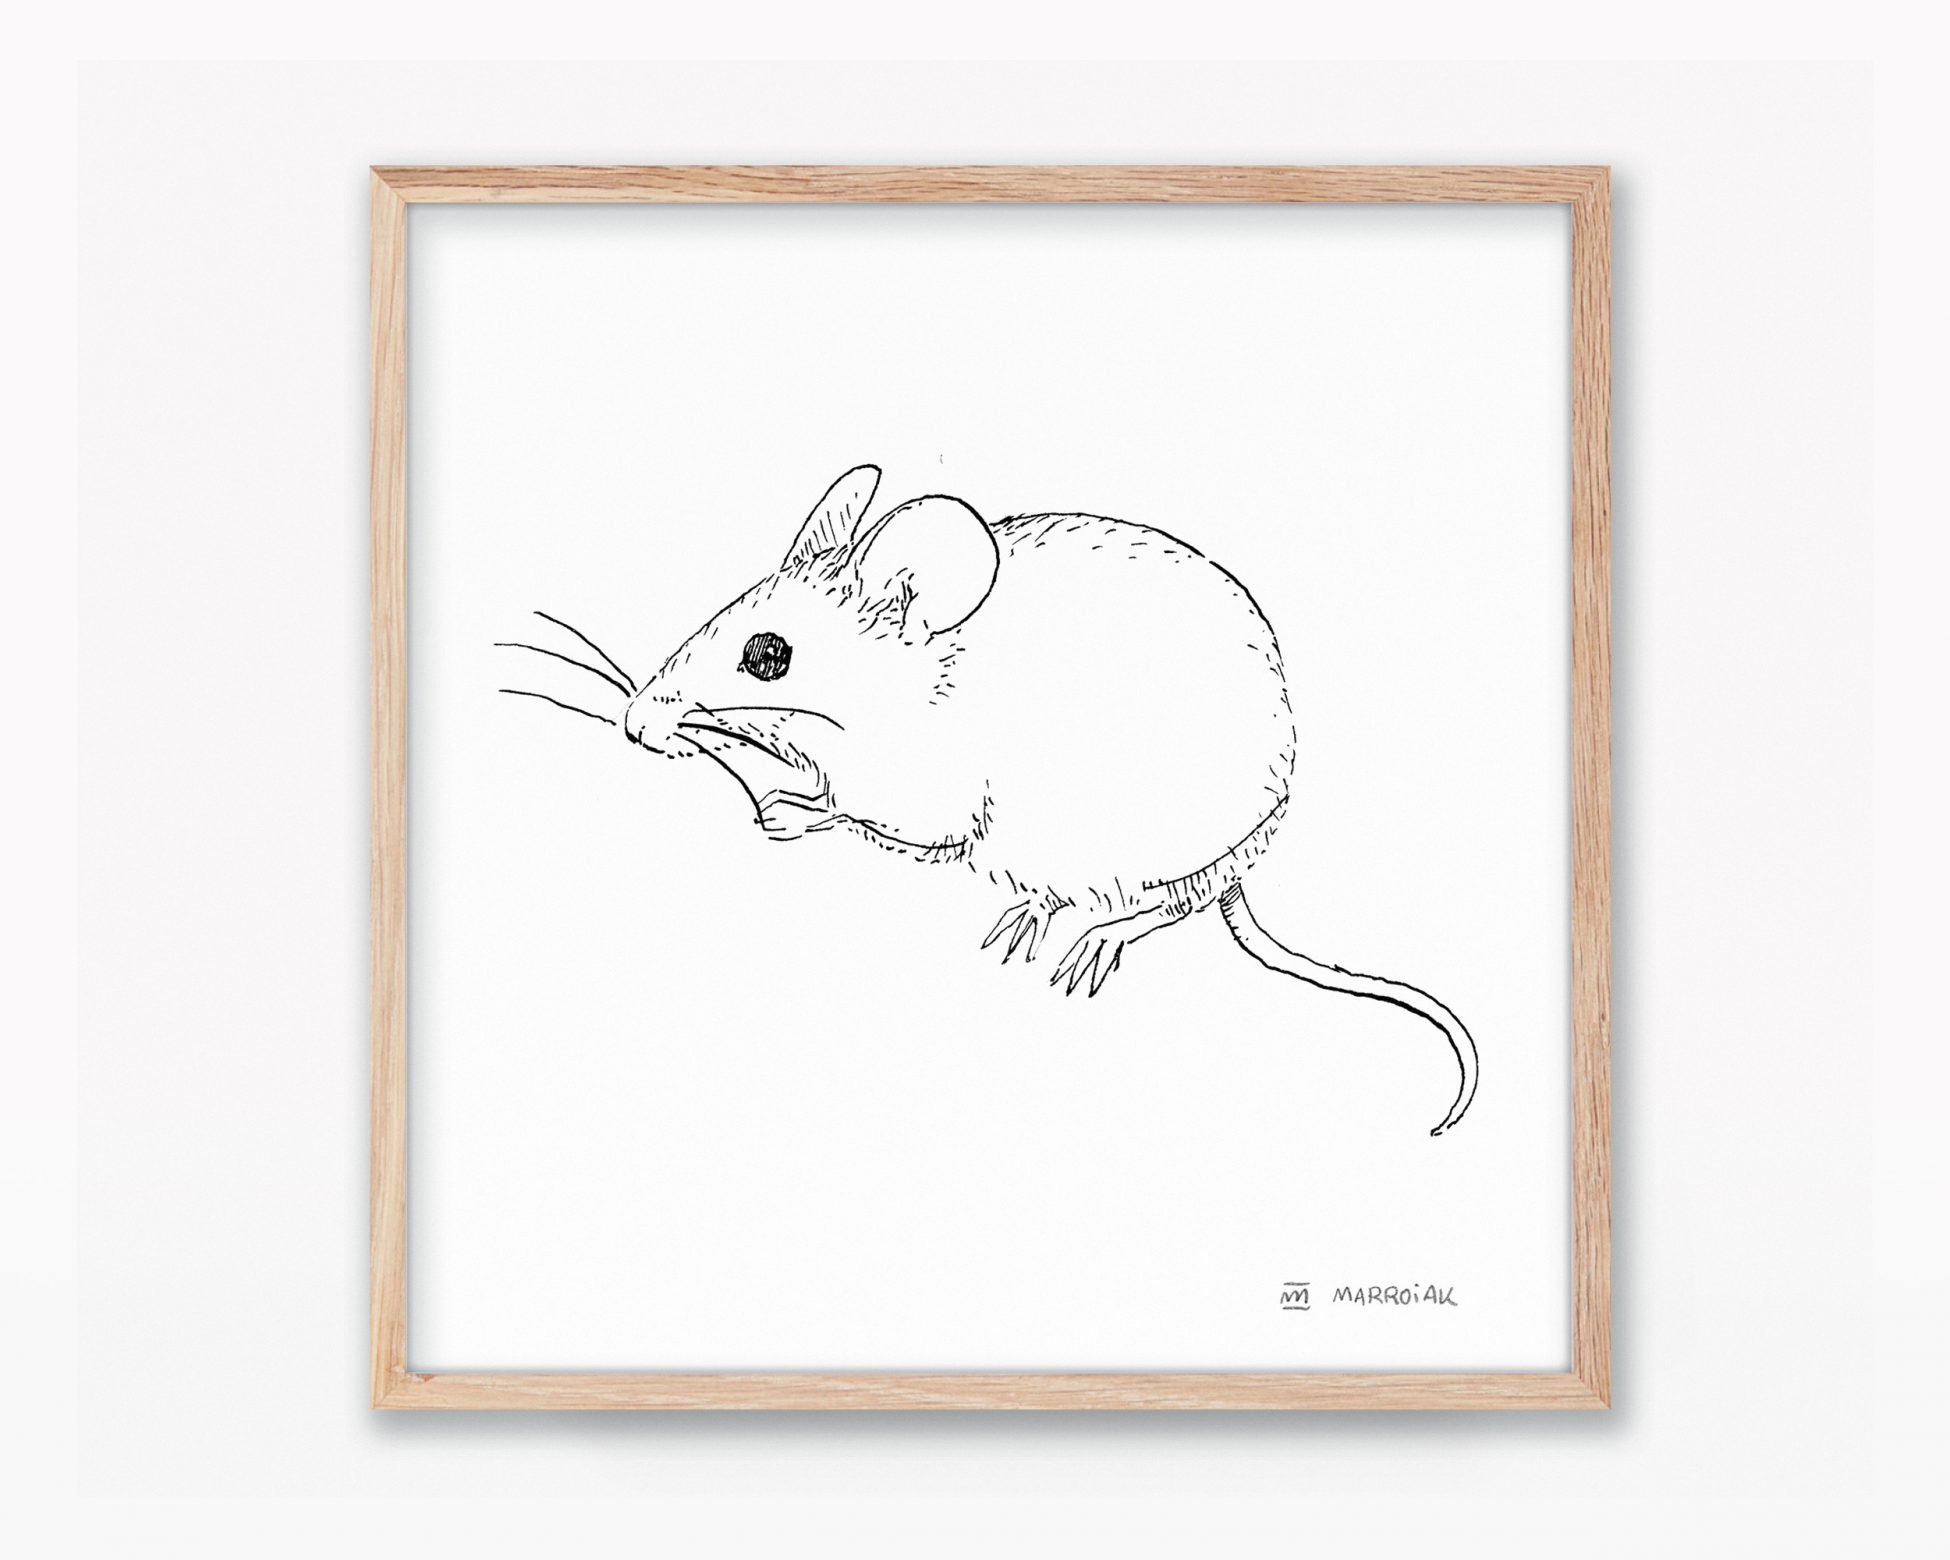 Cuadros de naturaleza de valencia y la península ibérica. Lámina para enmarcar con una ilustración en blanco y negro de un ratón moruno (Mus Spretus). Dibujo en tinta sobre papel.